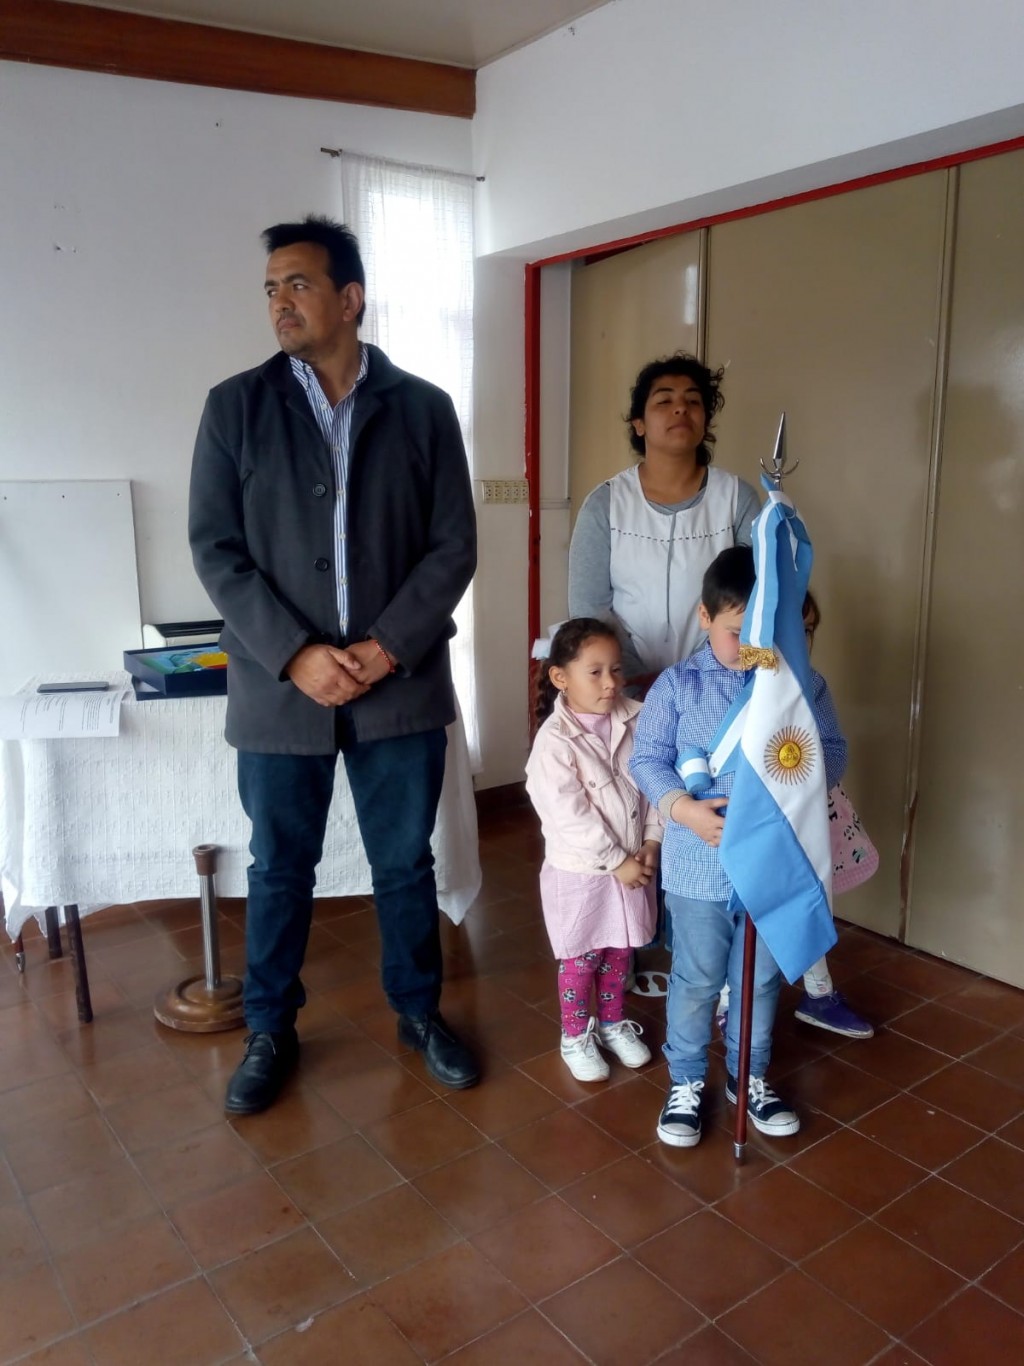 Ariel Ferreyra entregó banderas de ceremonia en instituciones educativas rurales